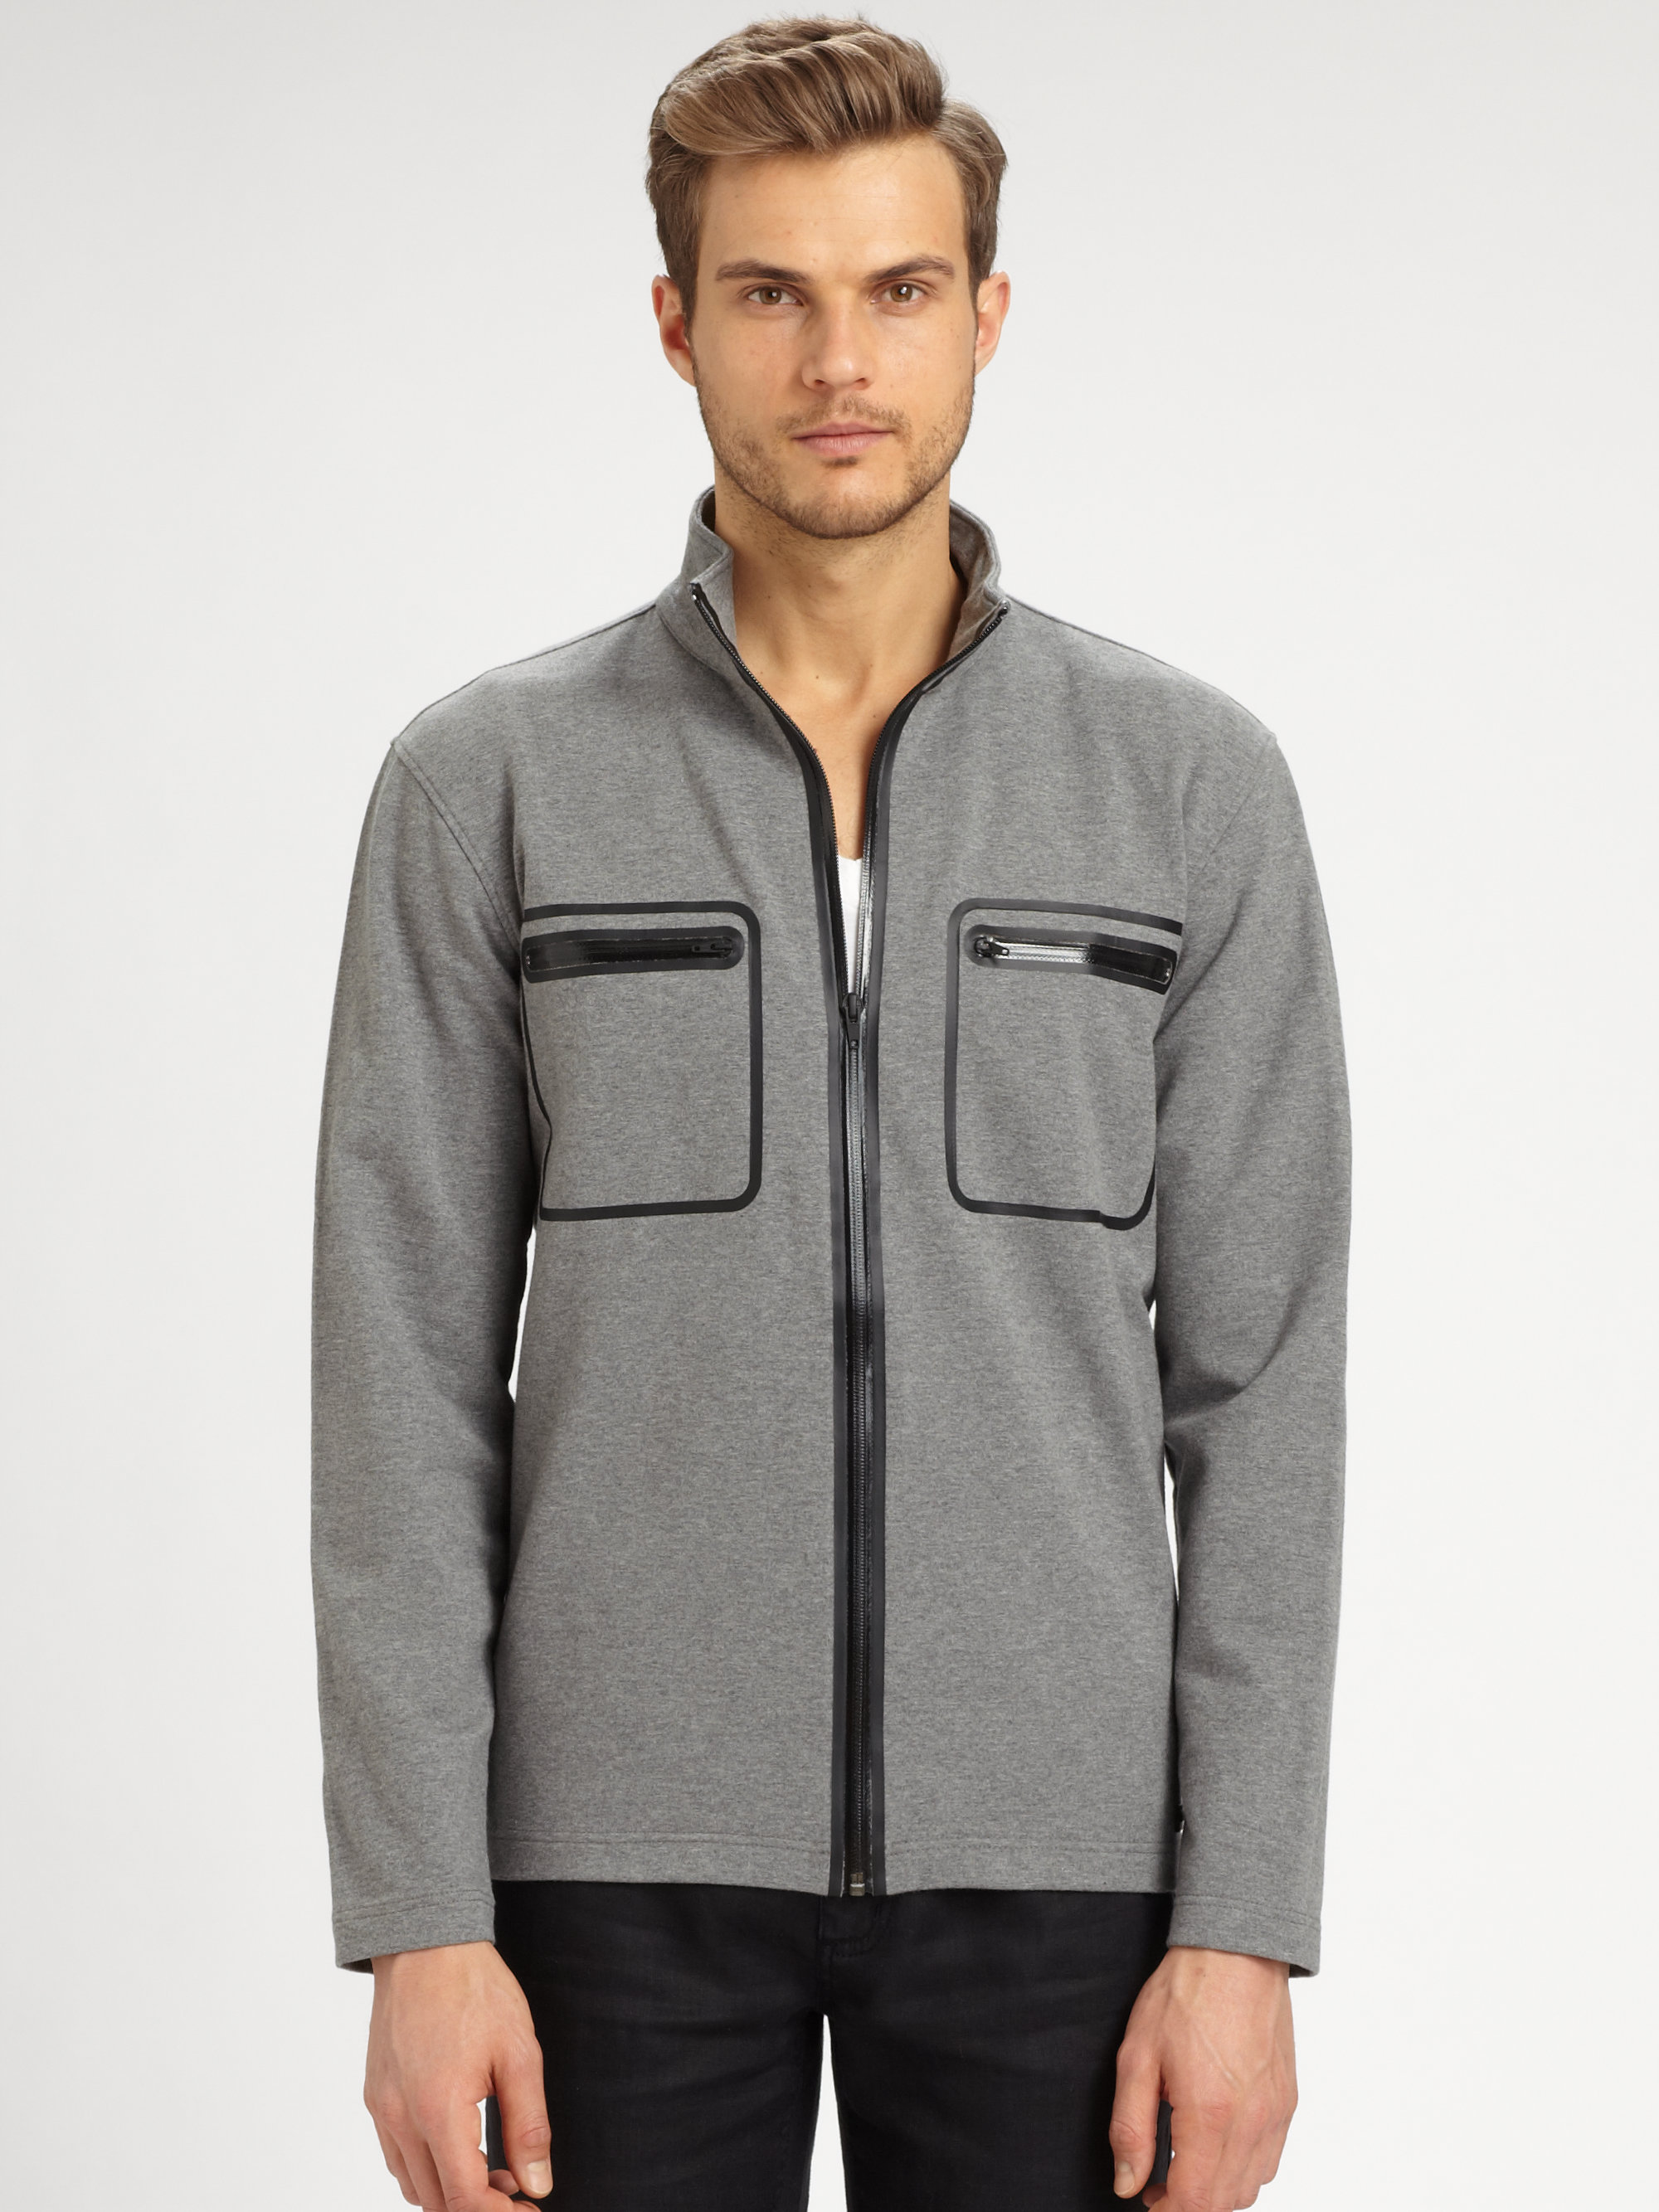 Lyst - Michael Kors Zip Up Cotton Jacket in Gray for Men